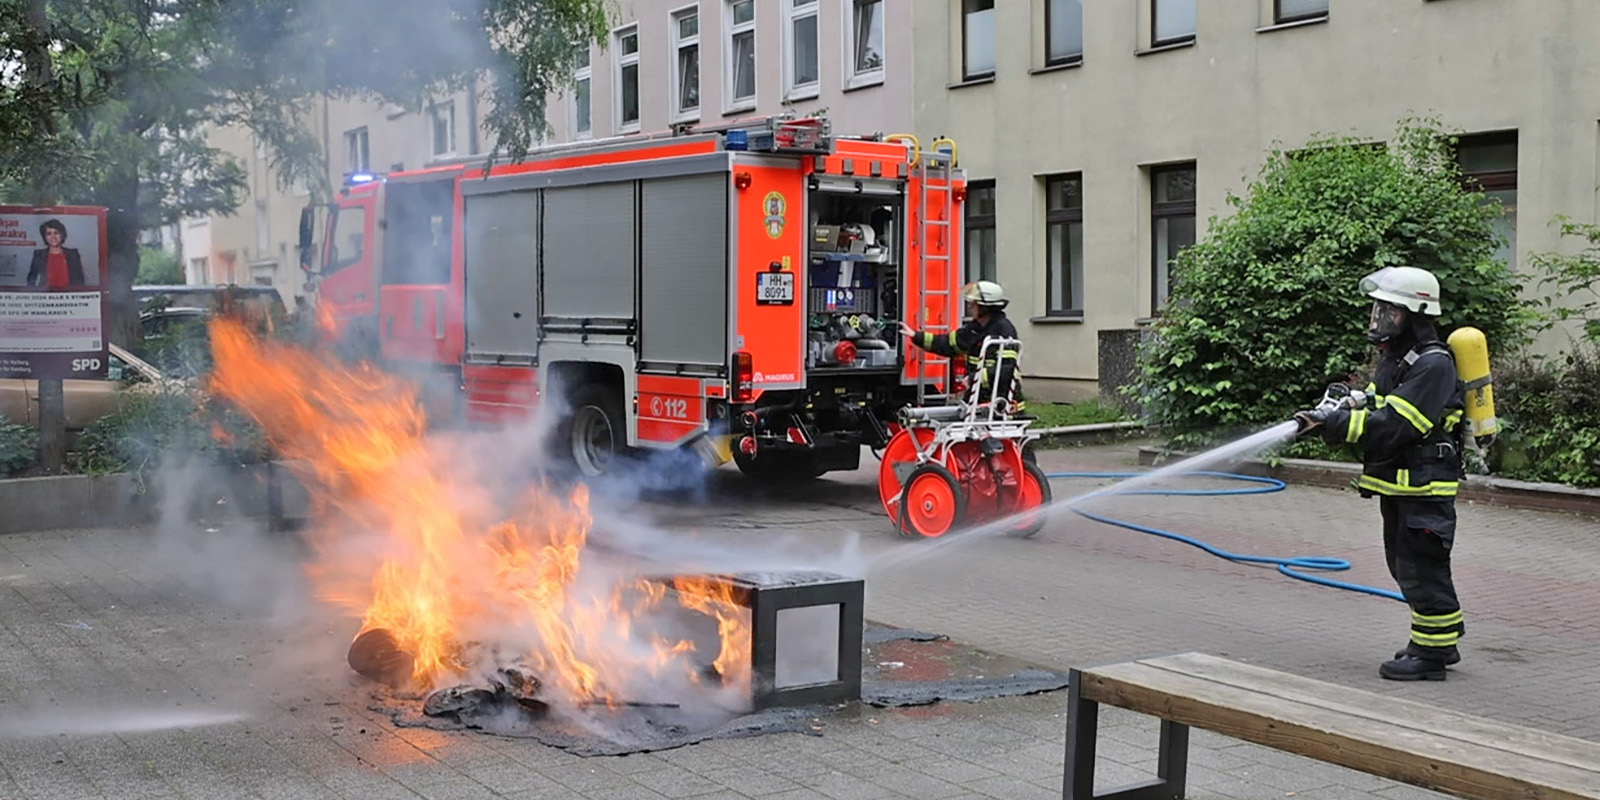 Einsatzkräfte der FF Rönneburg löschen den Brand. Foto: Lenthe-Medien